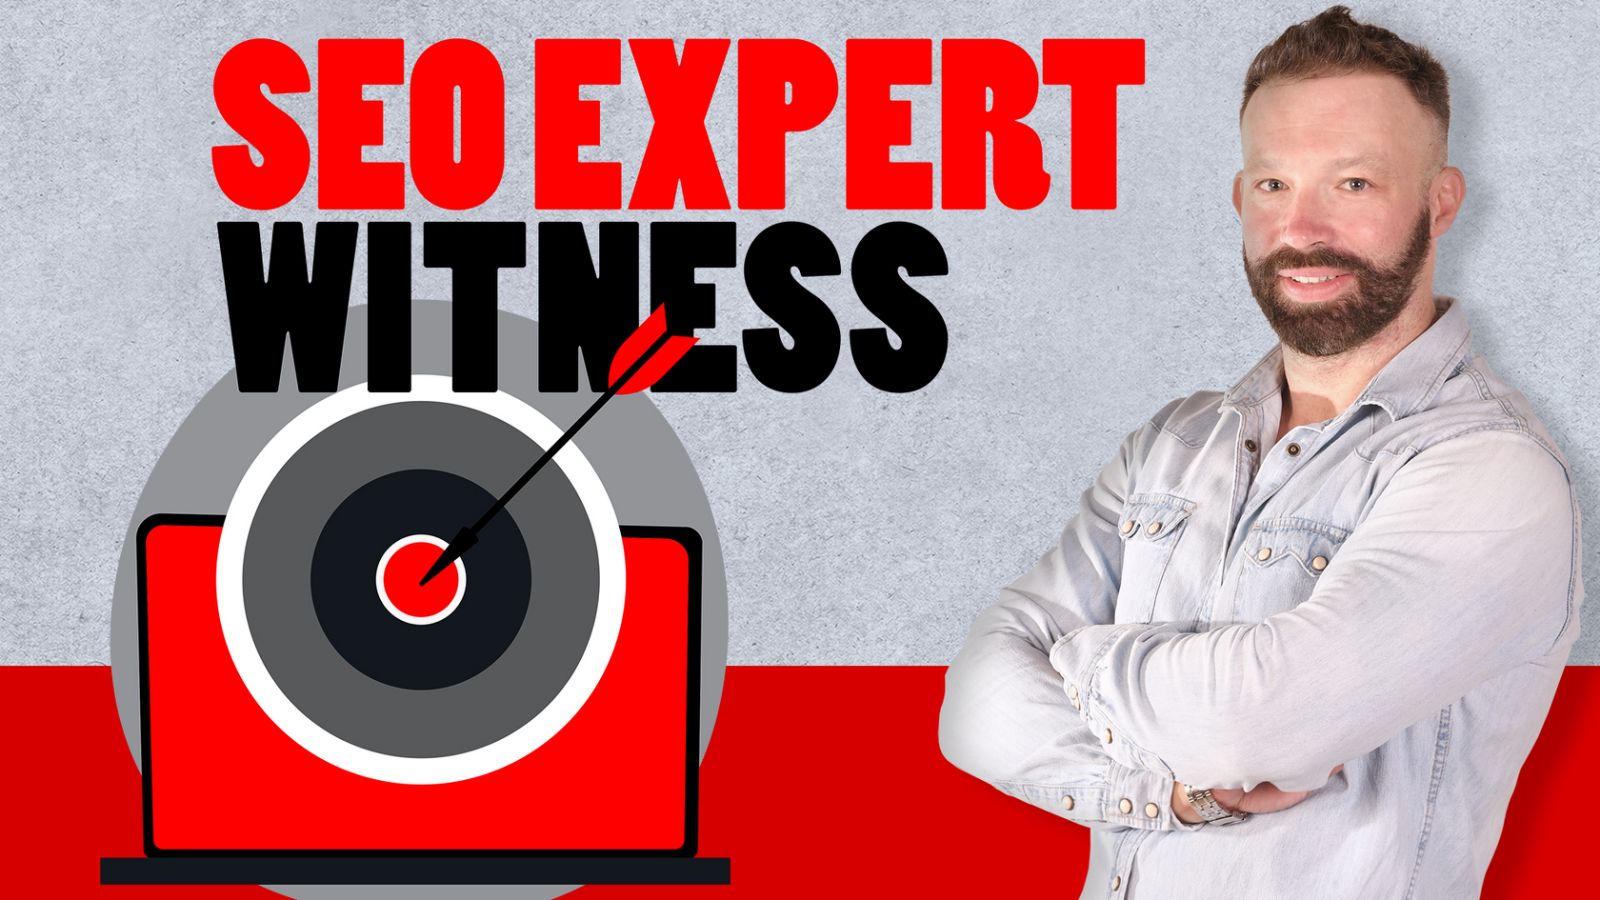 SEO expert witness